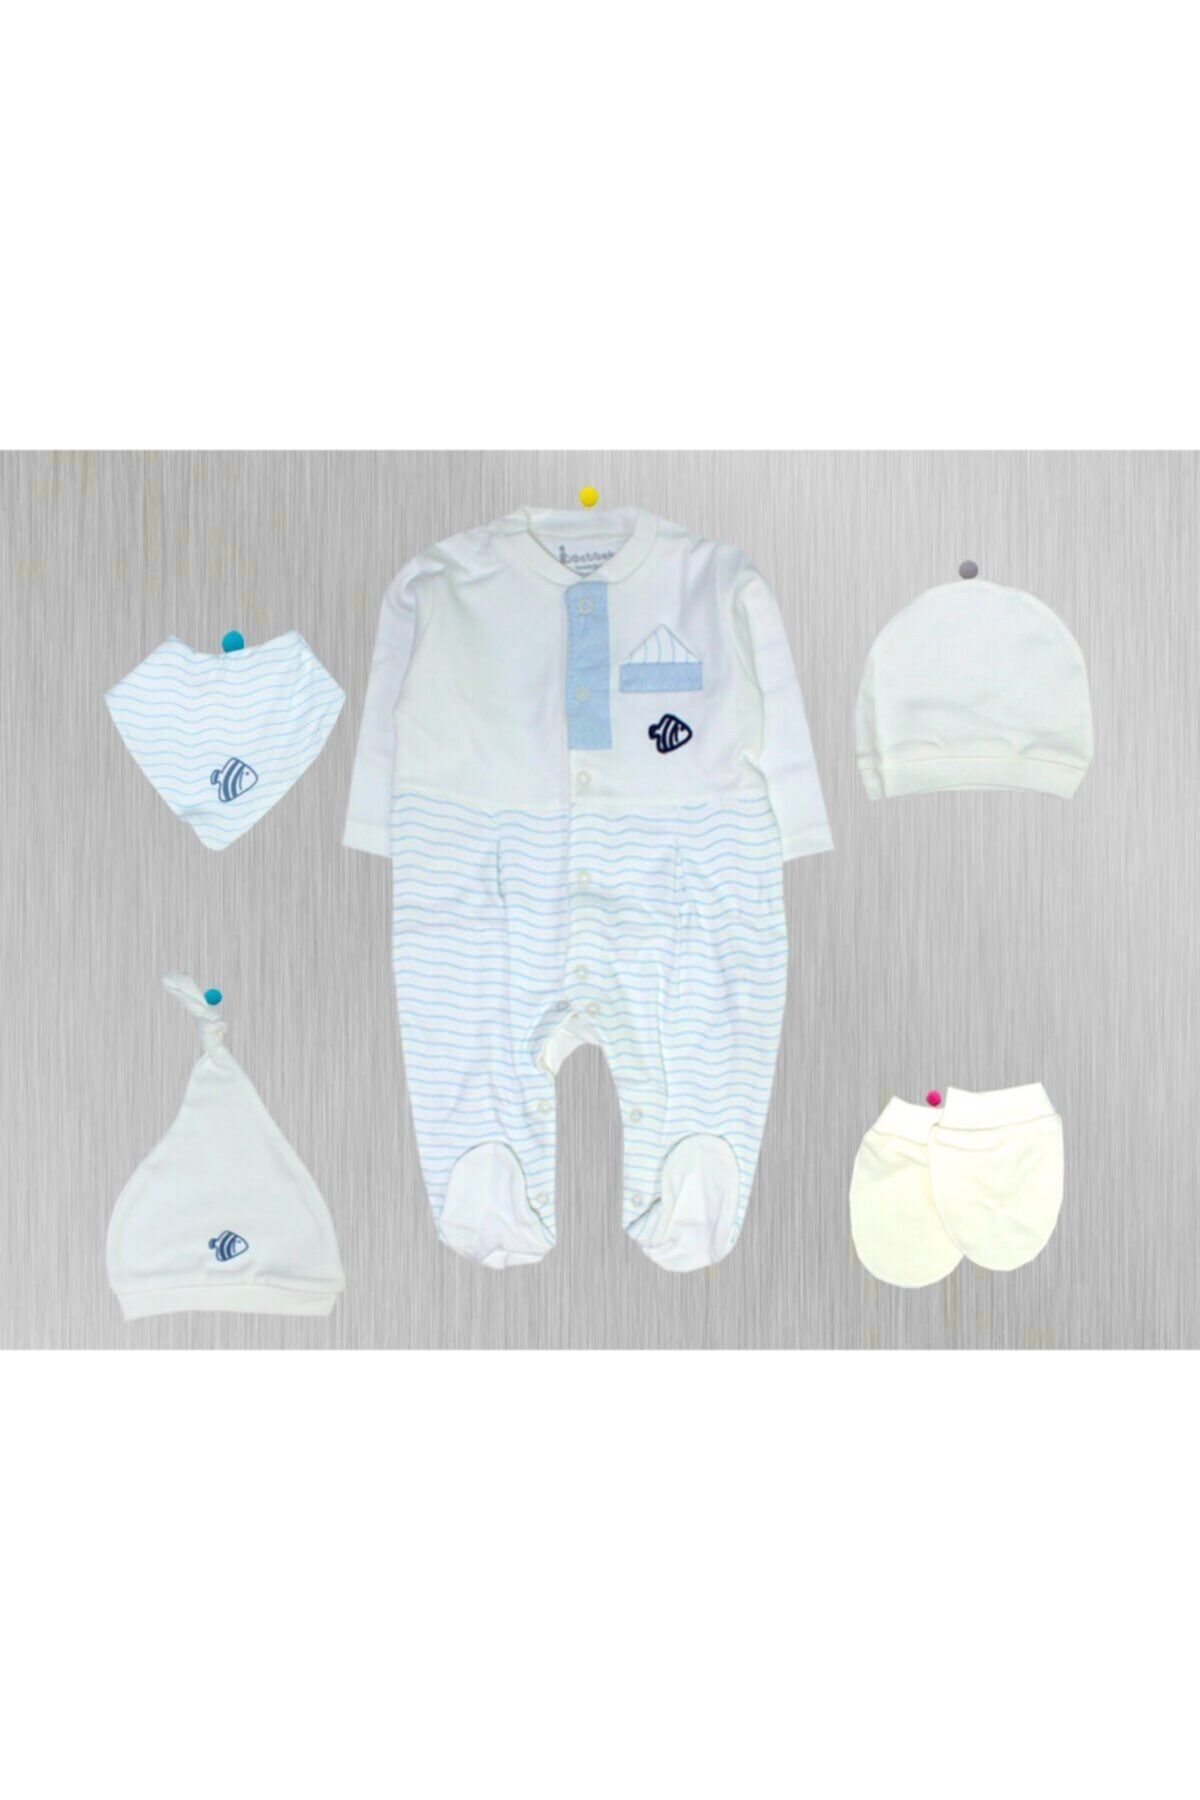 Bebbek Nenny Baby Happy Moon 5'li Zıbın Set Yeni Doğan Hastane Çıkışı -mavi